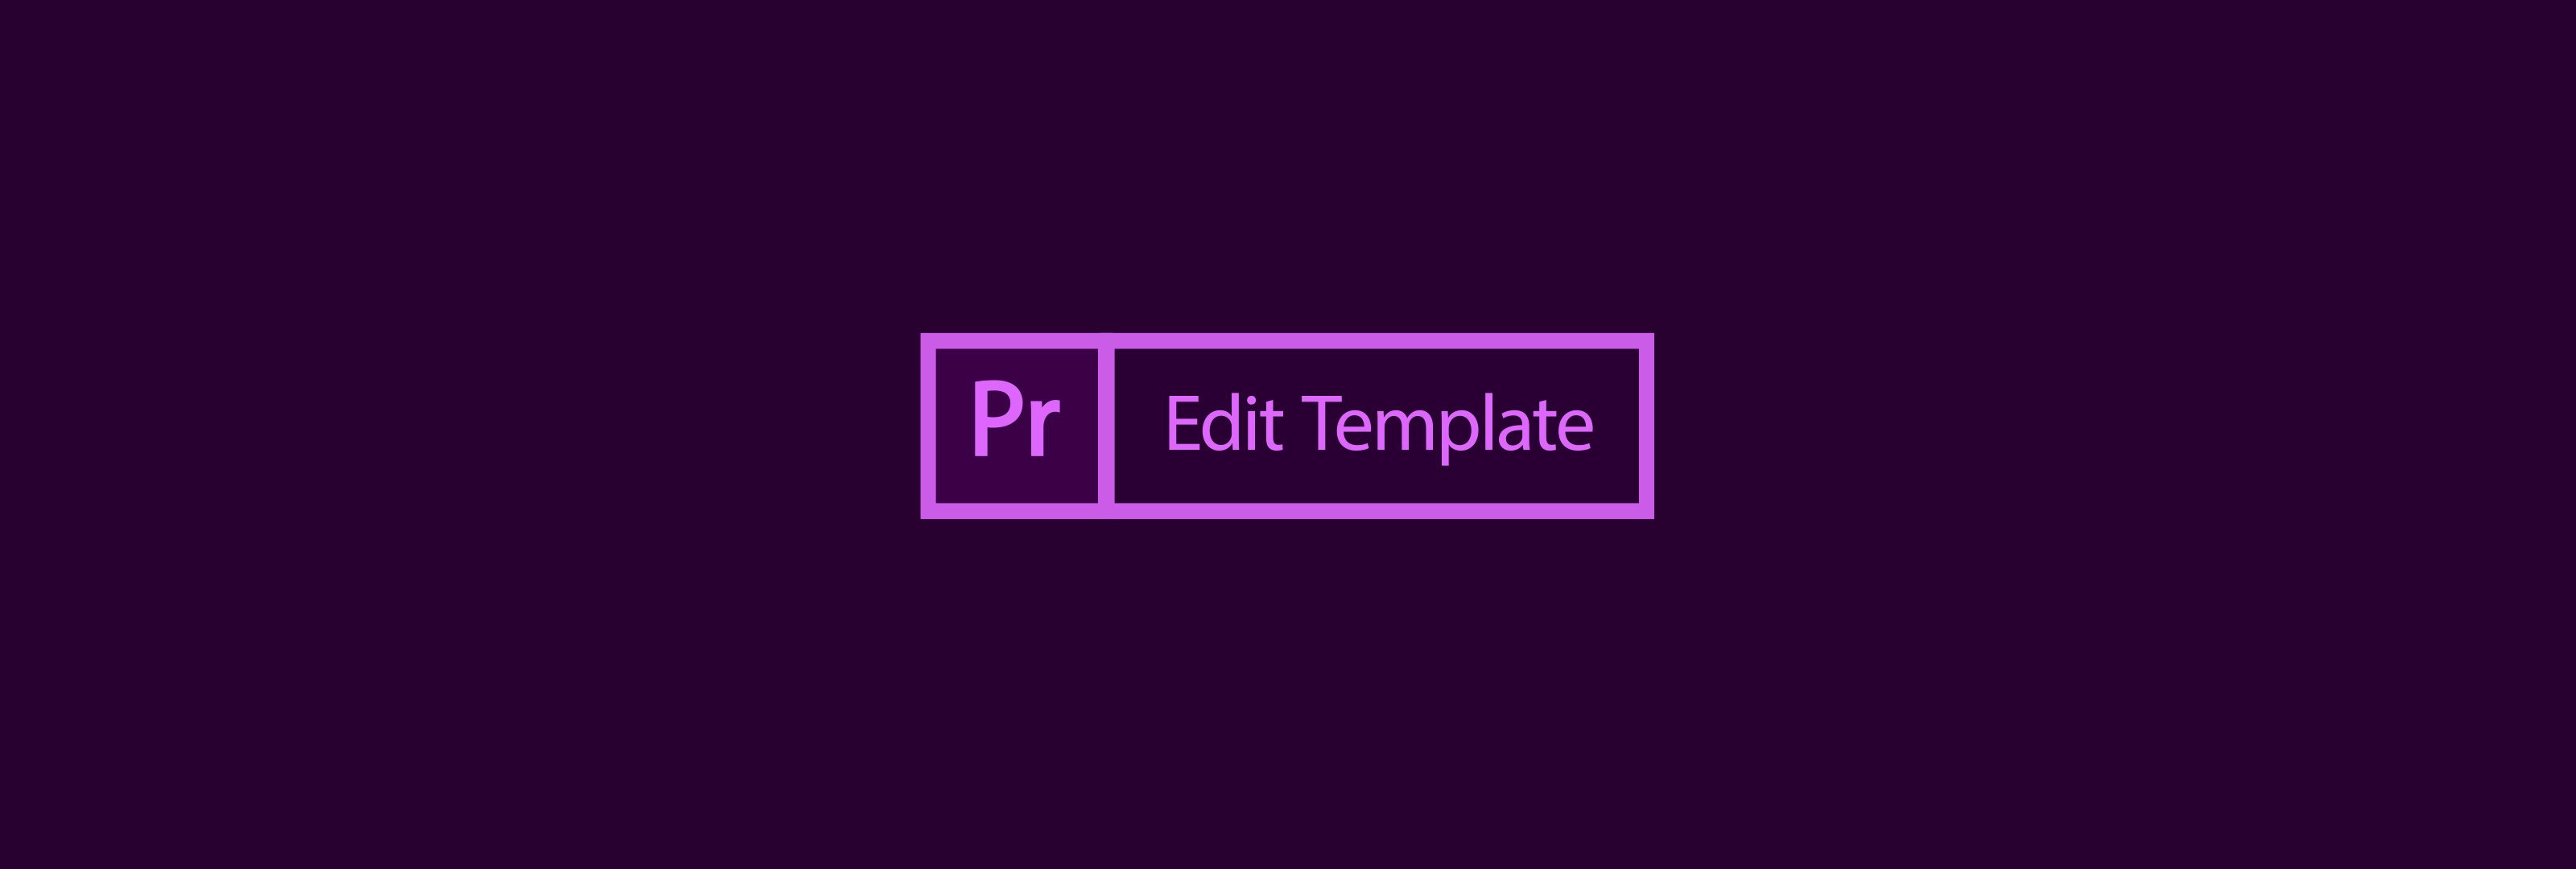 Adobe Premiere Pro Templates Free prizebaldcircle